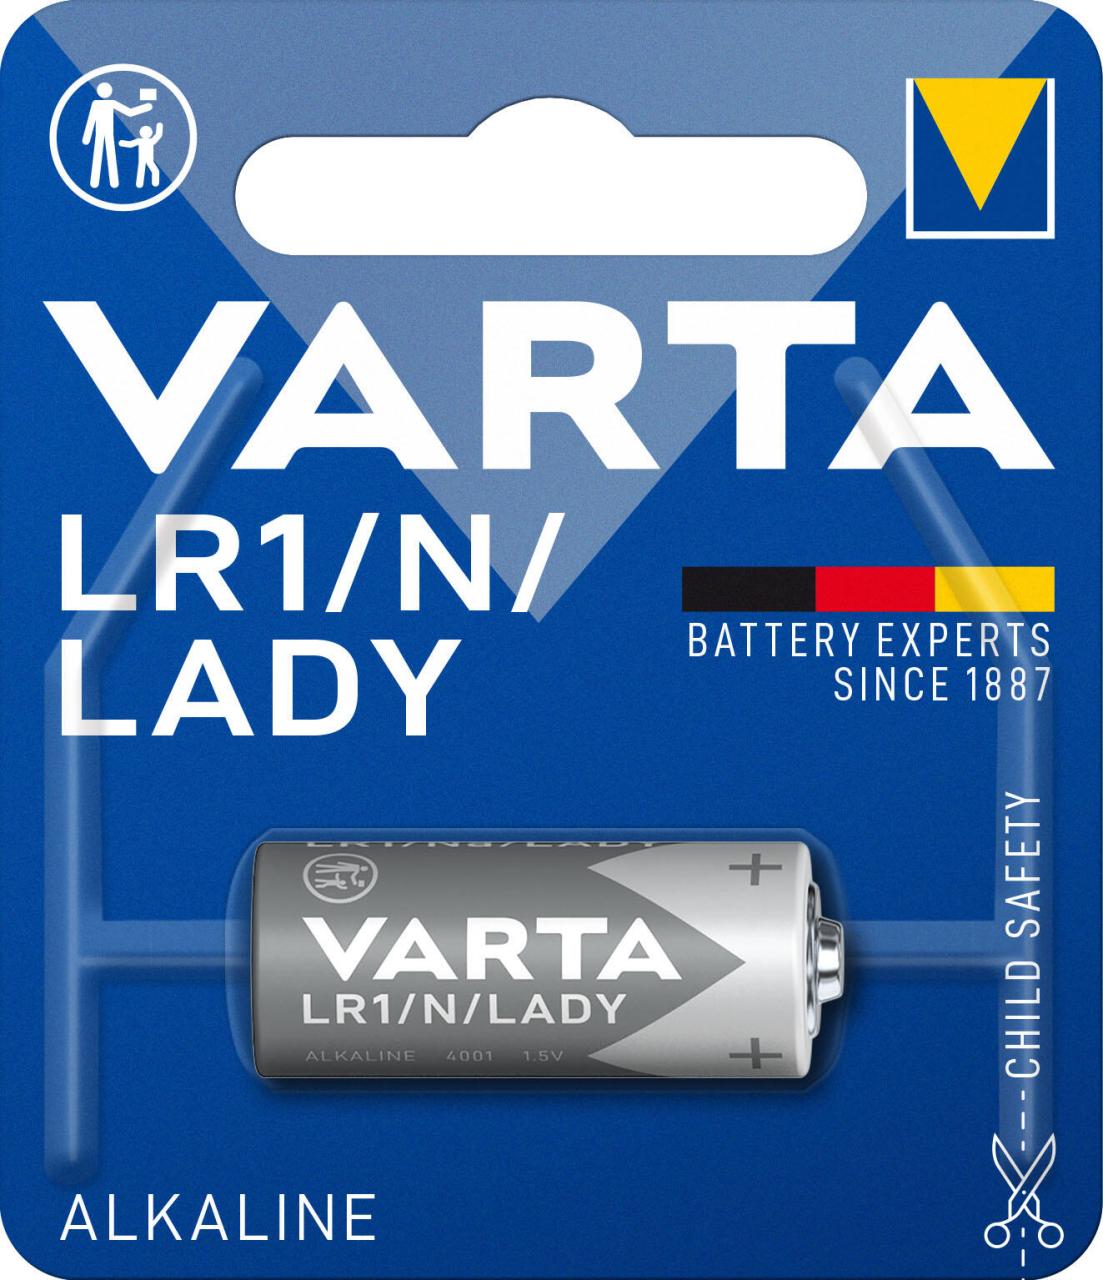 VARTA Batterie Lady N 1.5 V von Varta